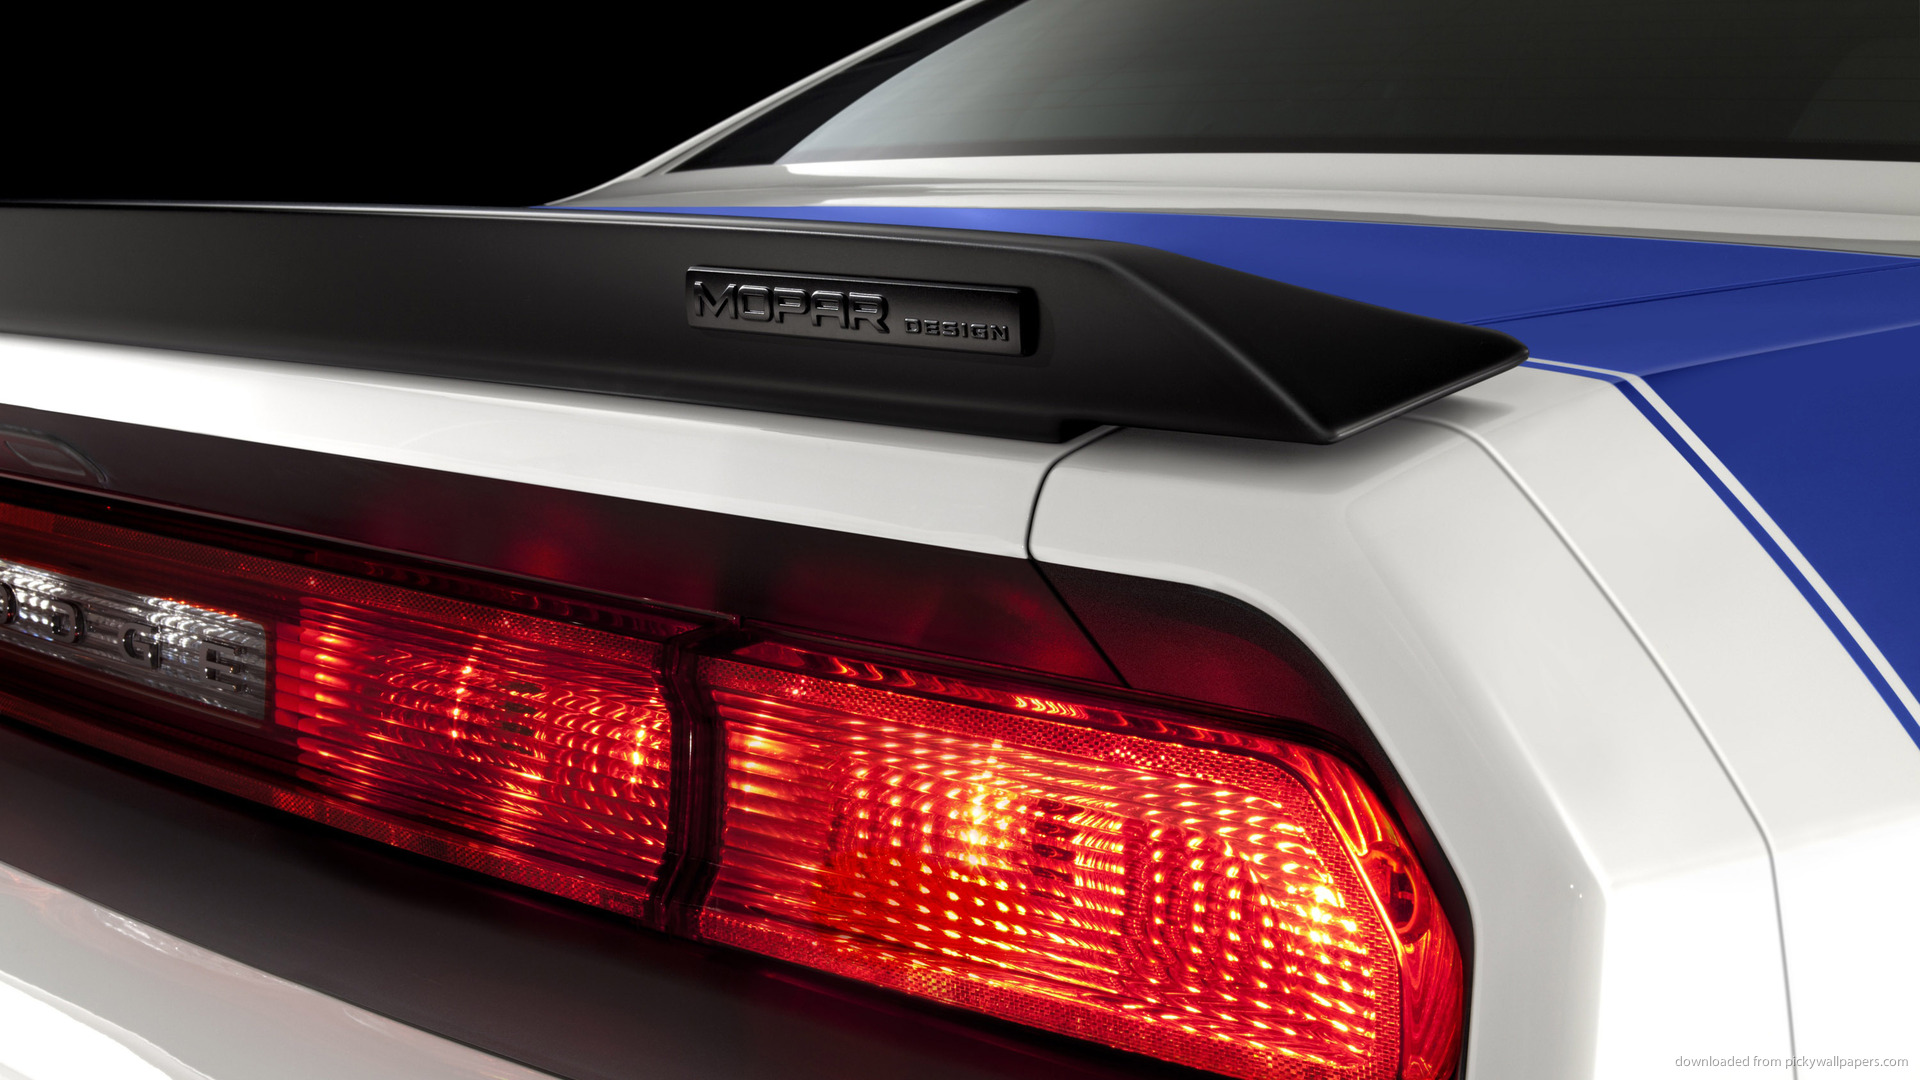  Mopar Dodge Challenger Back Headlights Screensaver For Kindle3 And DX